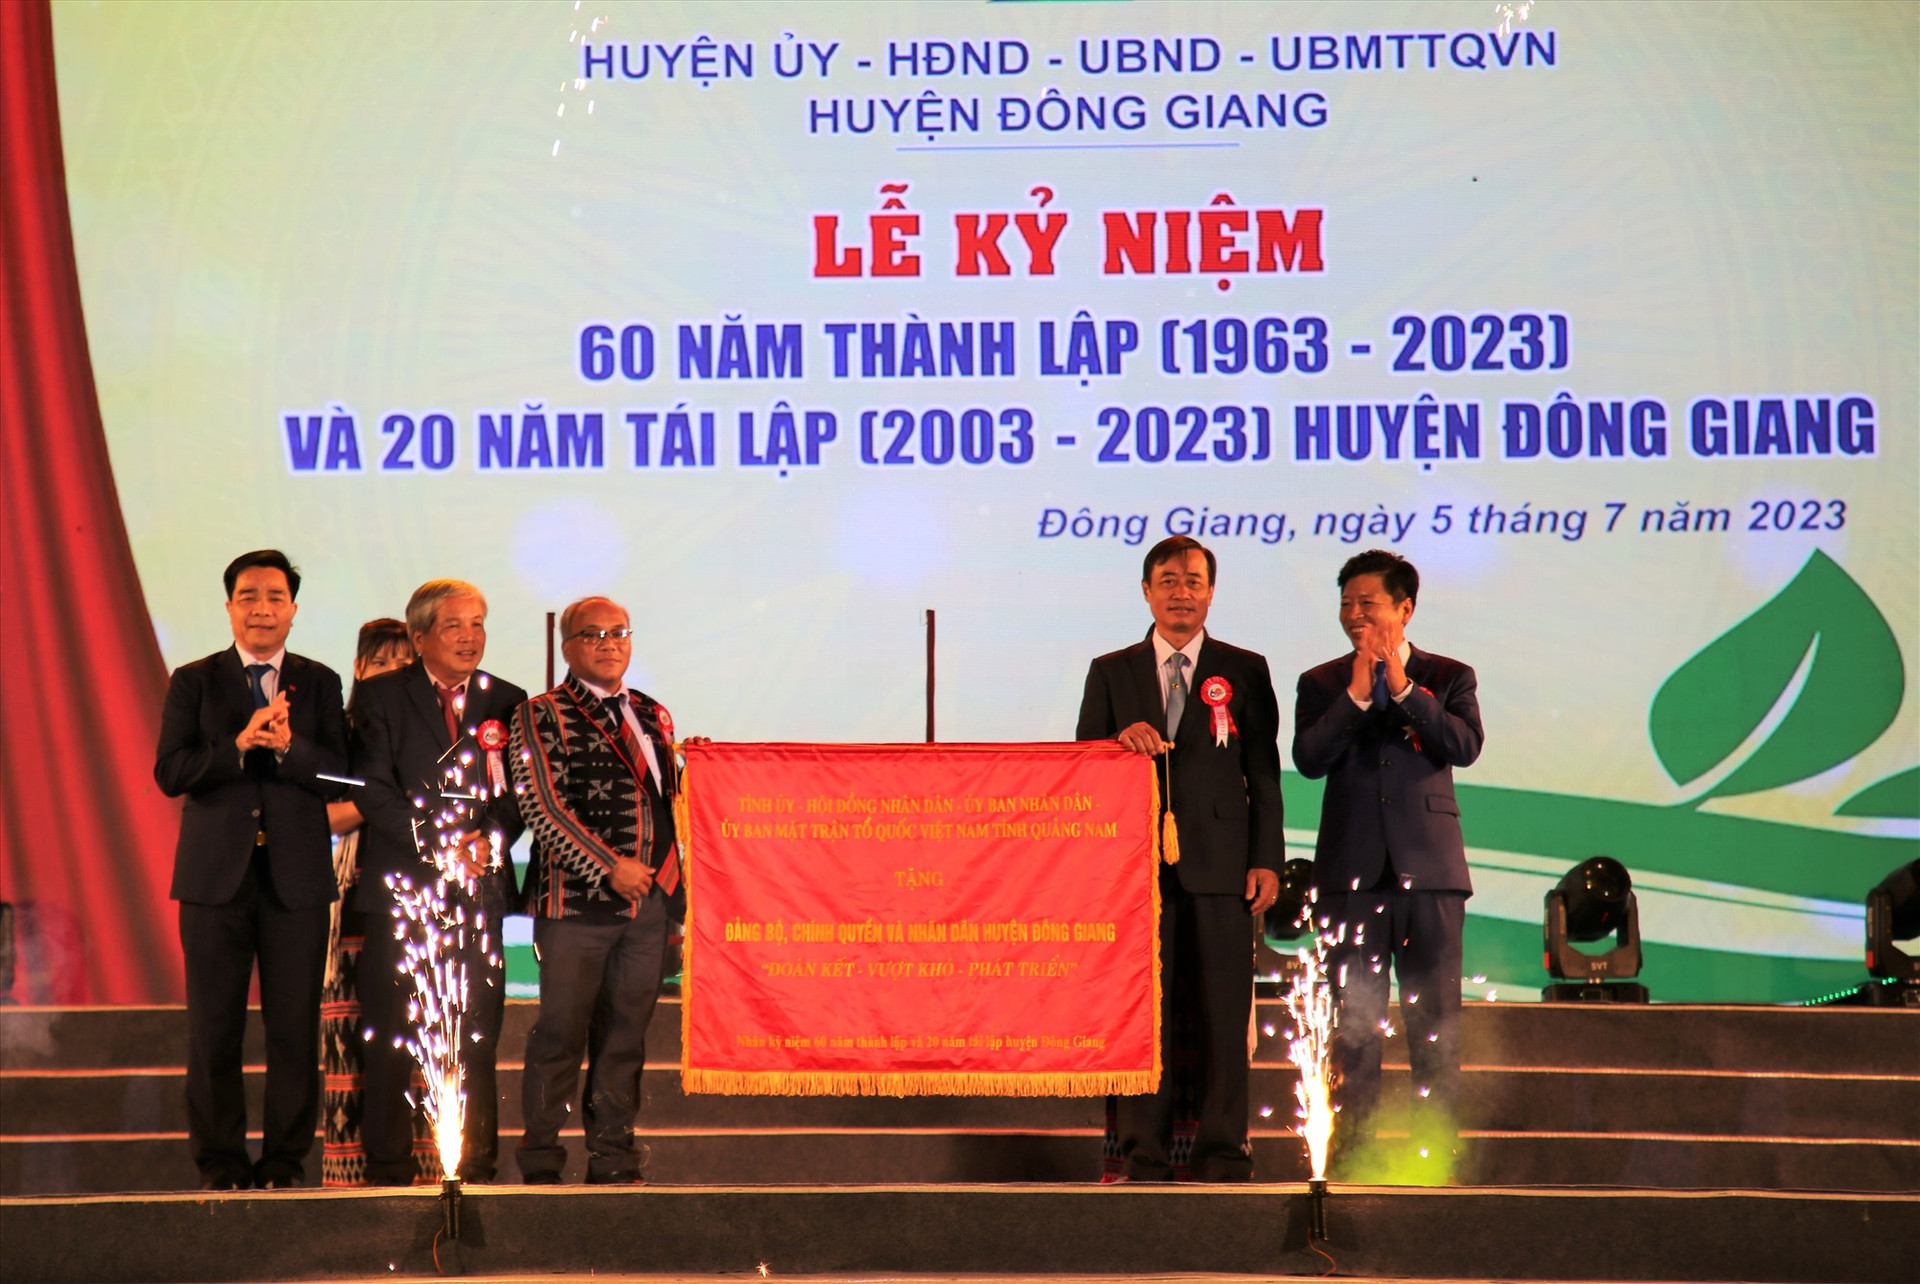 Đồng chí Lê Văn Dũng thay mặt lãnh đạo tỉnh tặng bức trướng cho huyện Đông Giang. Ảnh: A.N